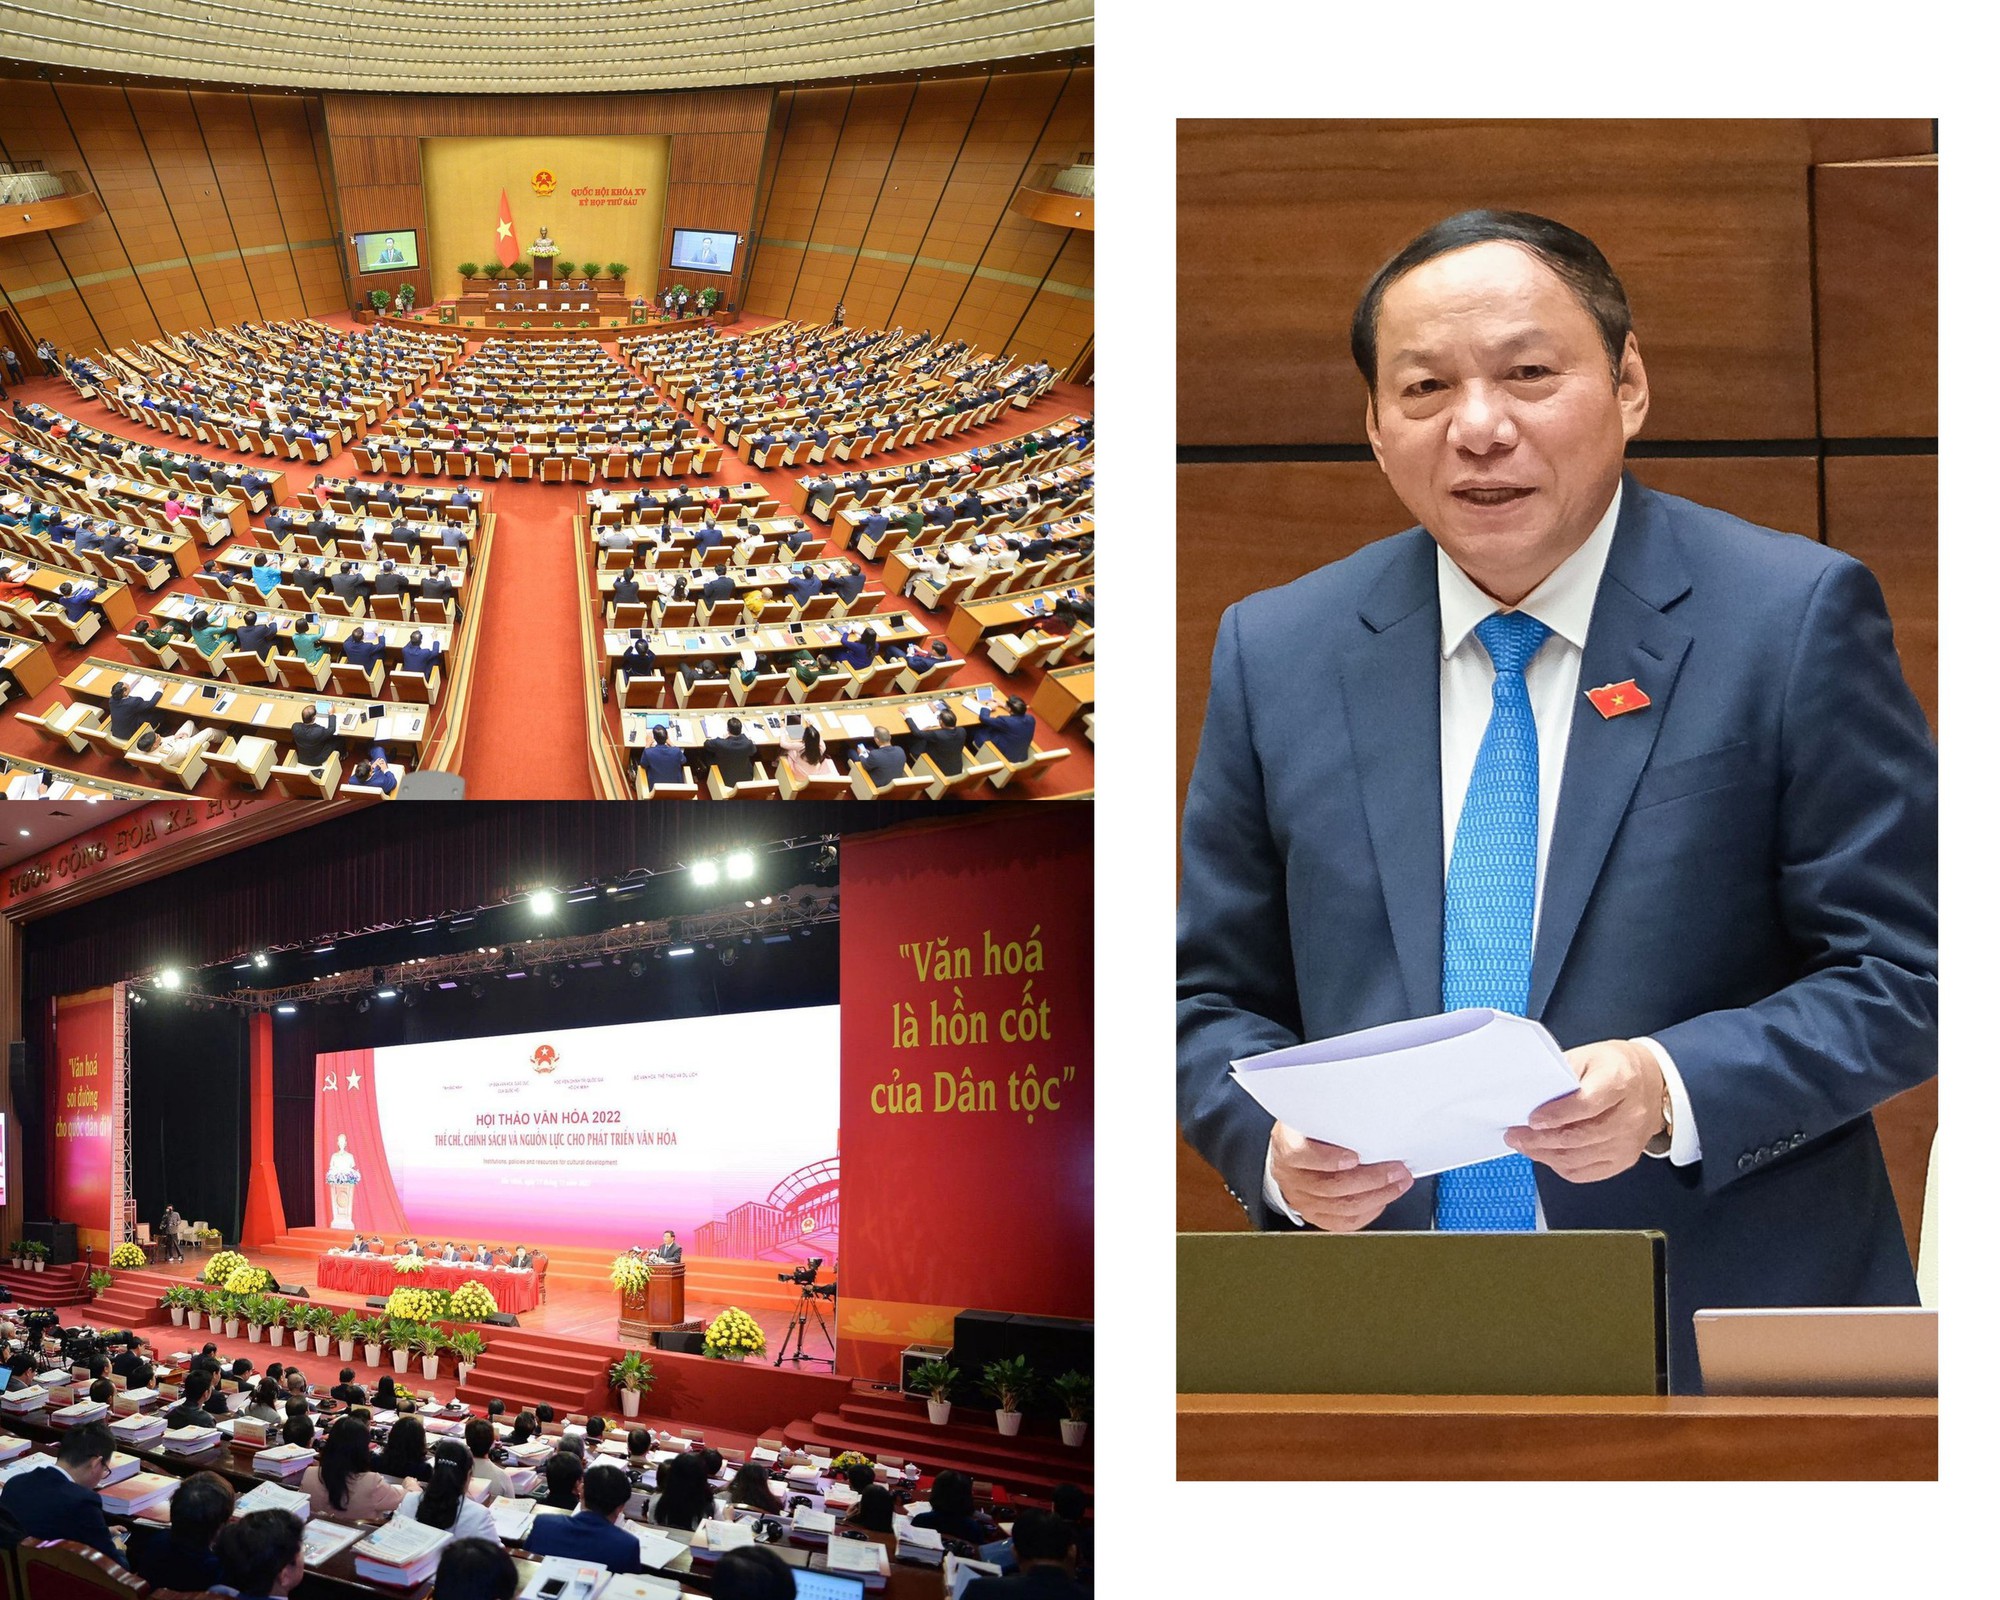 Bộ trưởng Nguyễn Văn Hùng: Quyết tâm xây dựng văn hóa trở thành động lực và nguồn lực trong sự phát triển bền vững - Ảnh 2.